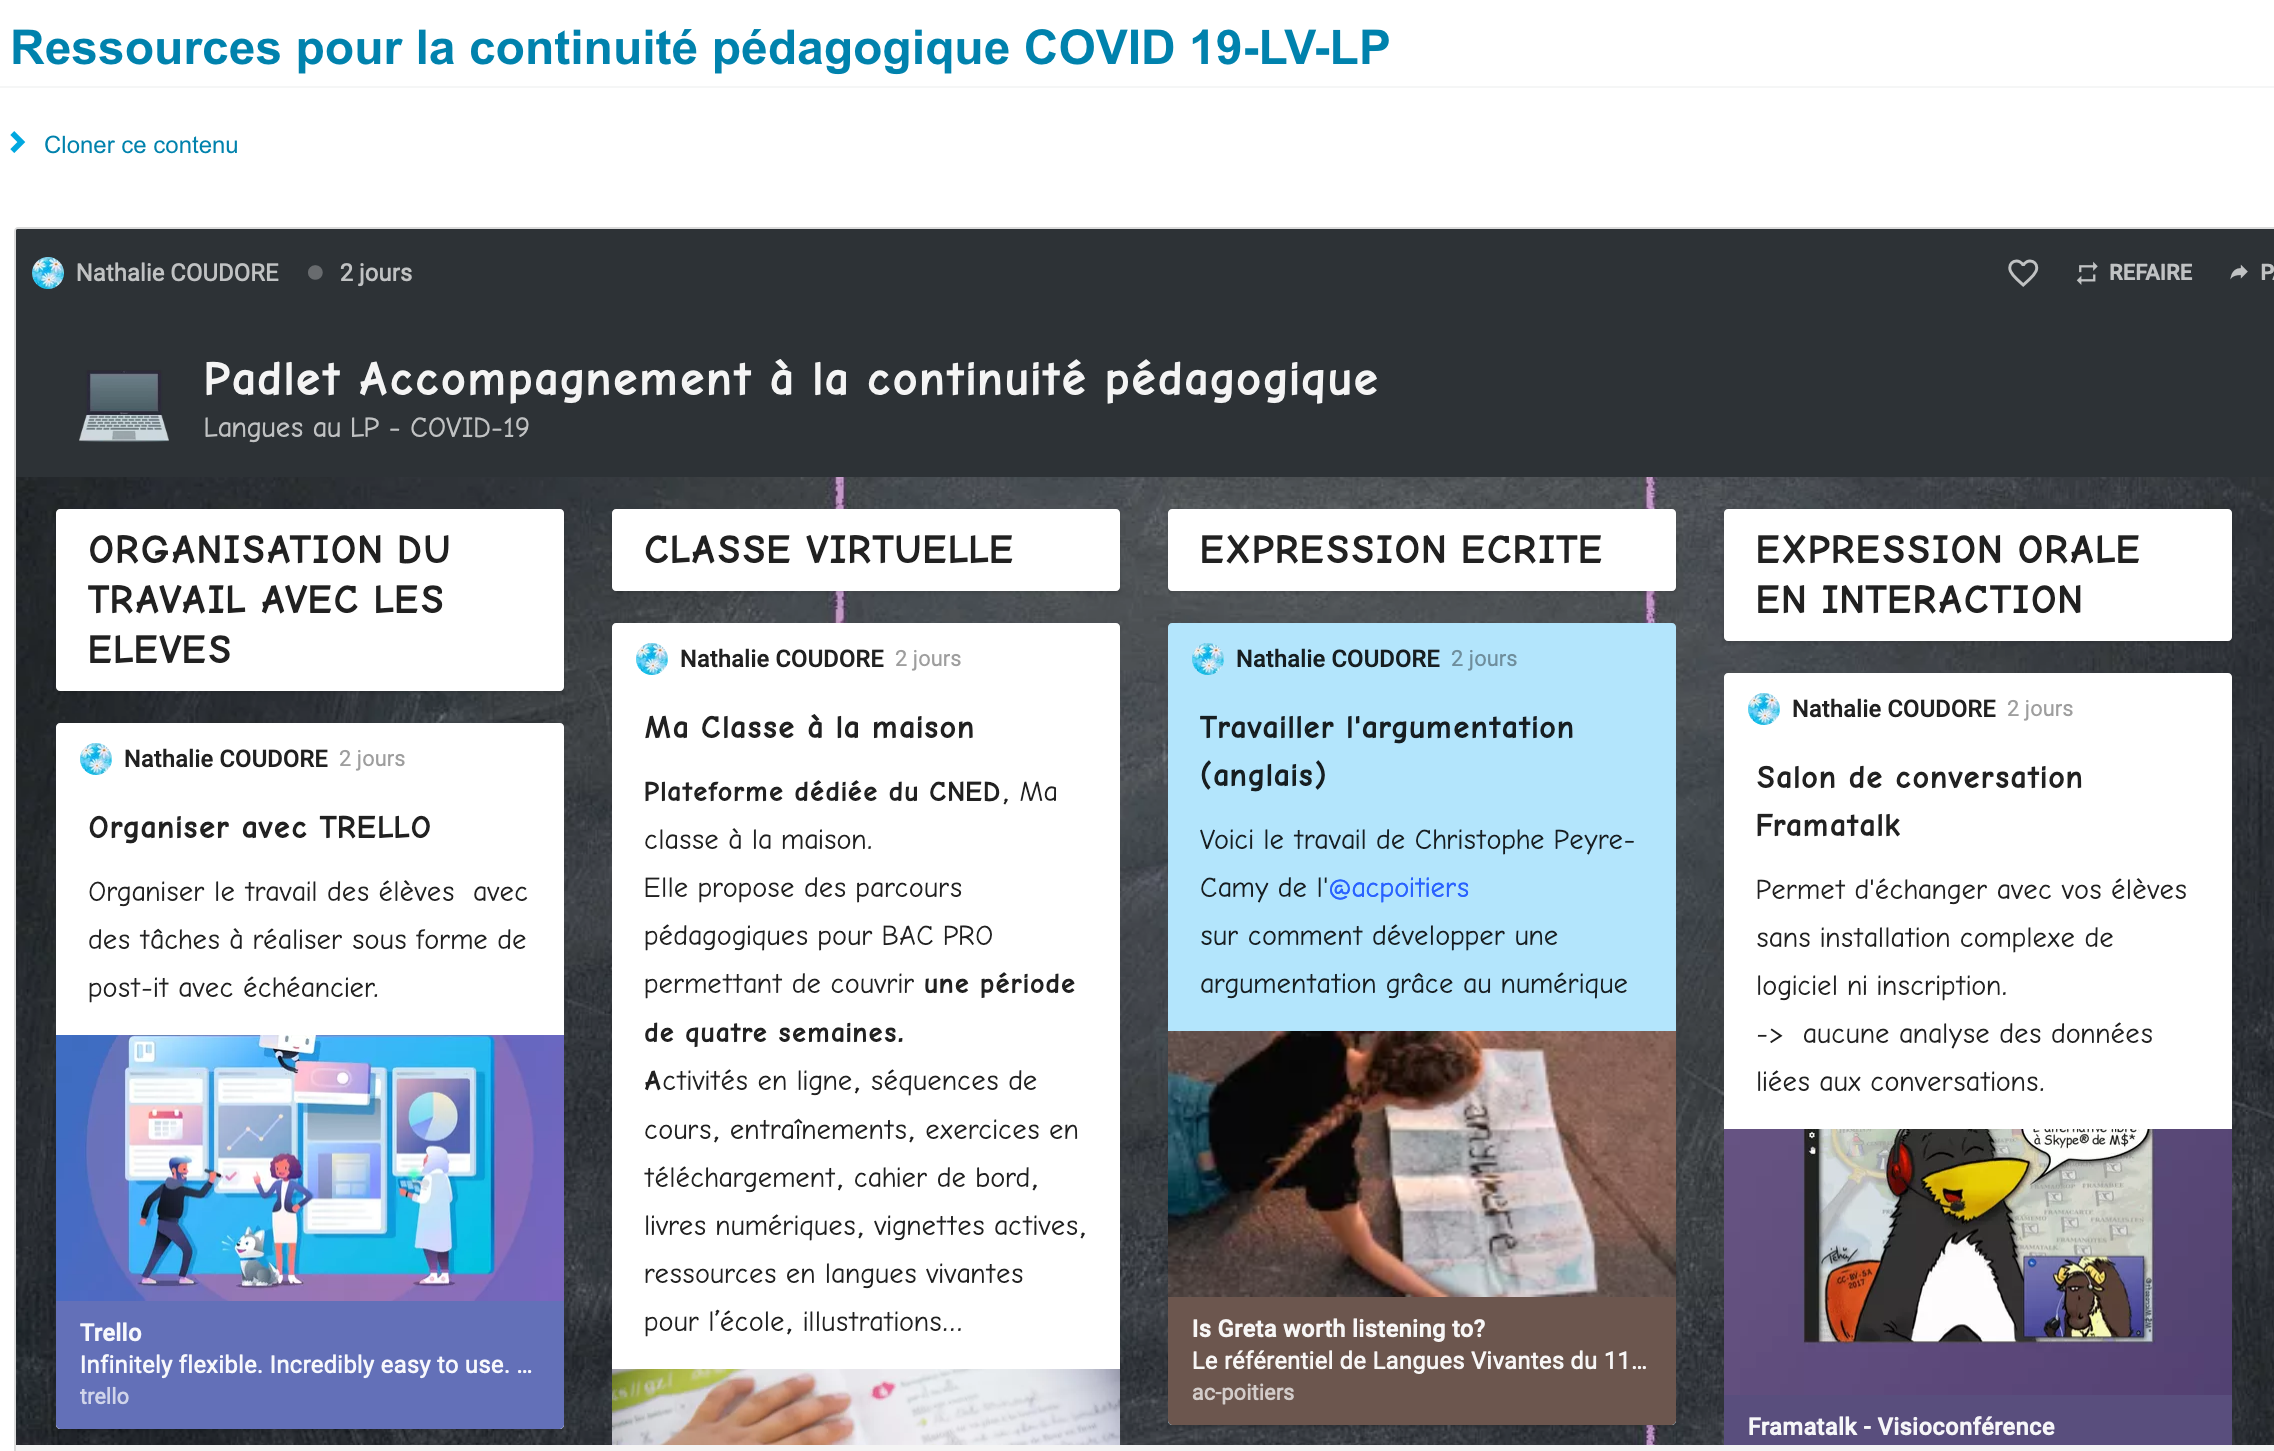 ressources_pour_la_continuite_pedagogique_covid_19-lv-lp_site_des_langues_vivantes.png